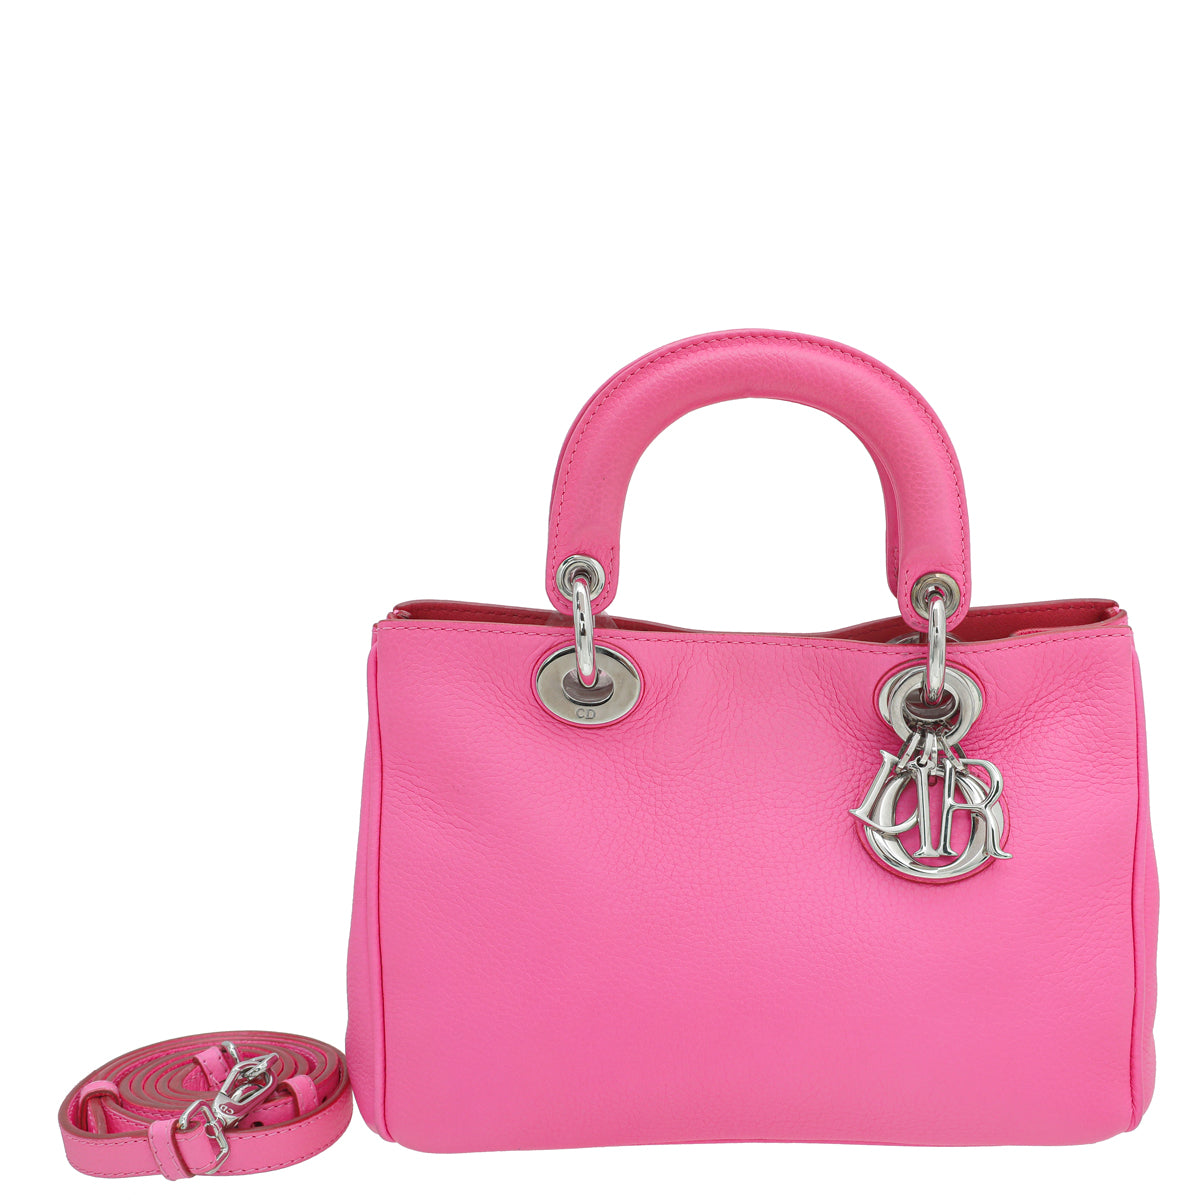 Christian Dior Neon Pink Diorissimo Mini Bag